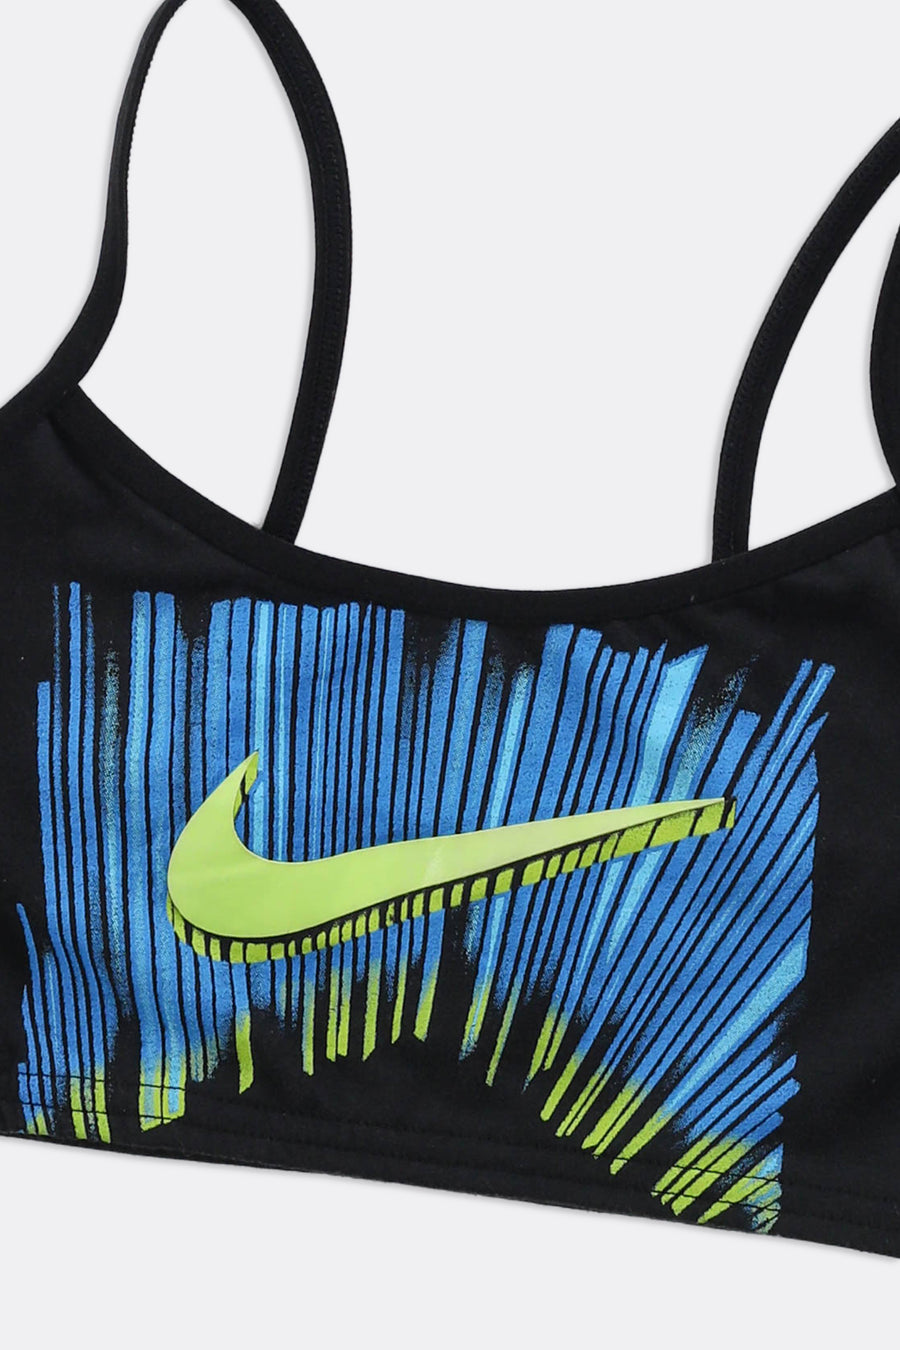 Rework Nike Bra Top - XS